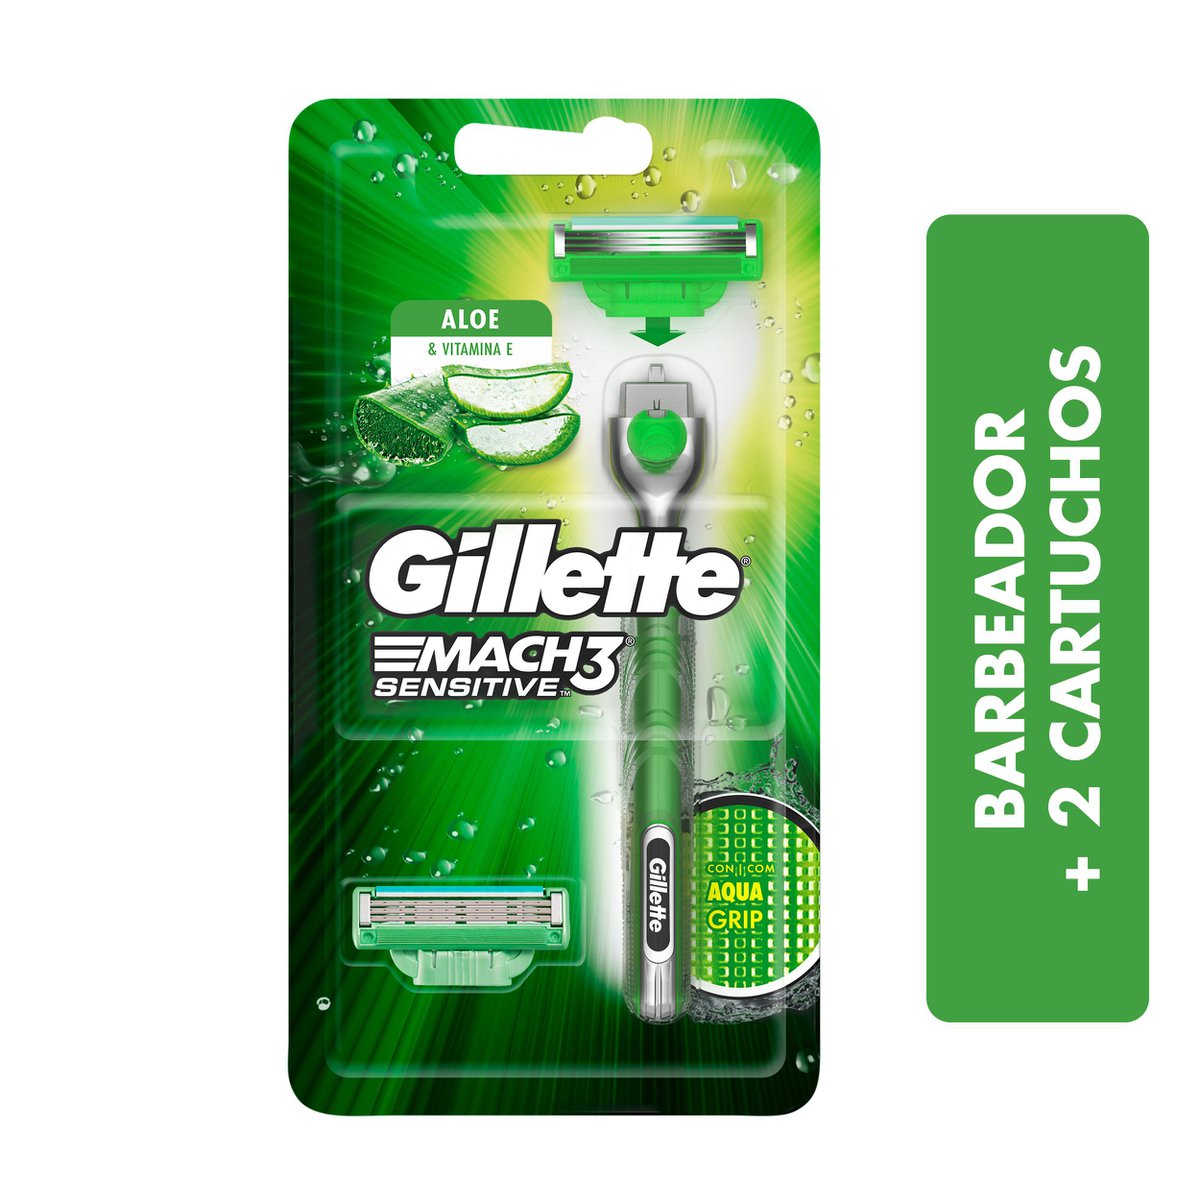 Aparelho De Barbear Gillette Mach3 Acqua Grip 1 aparelho + 2 cargas